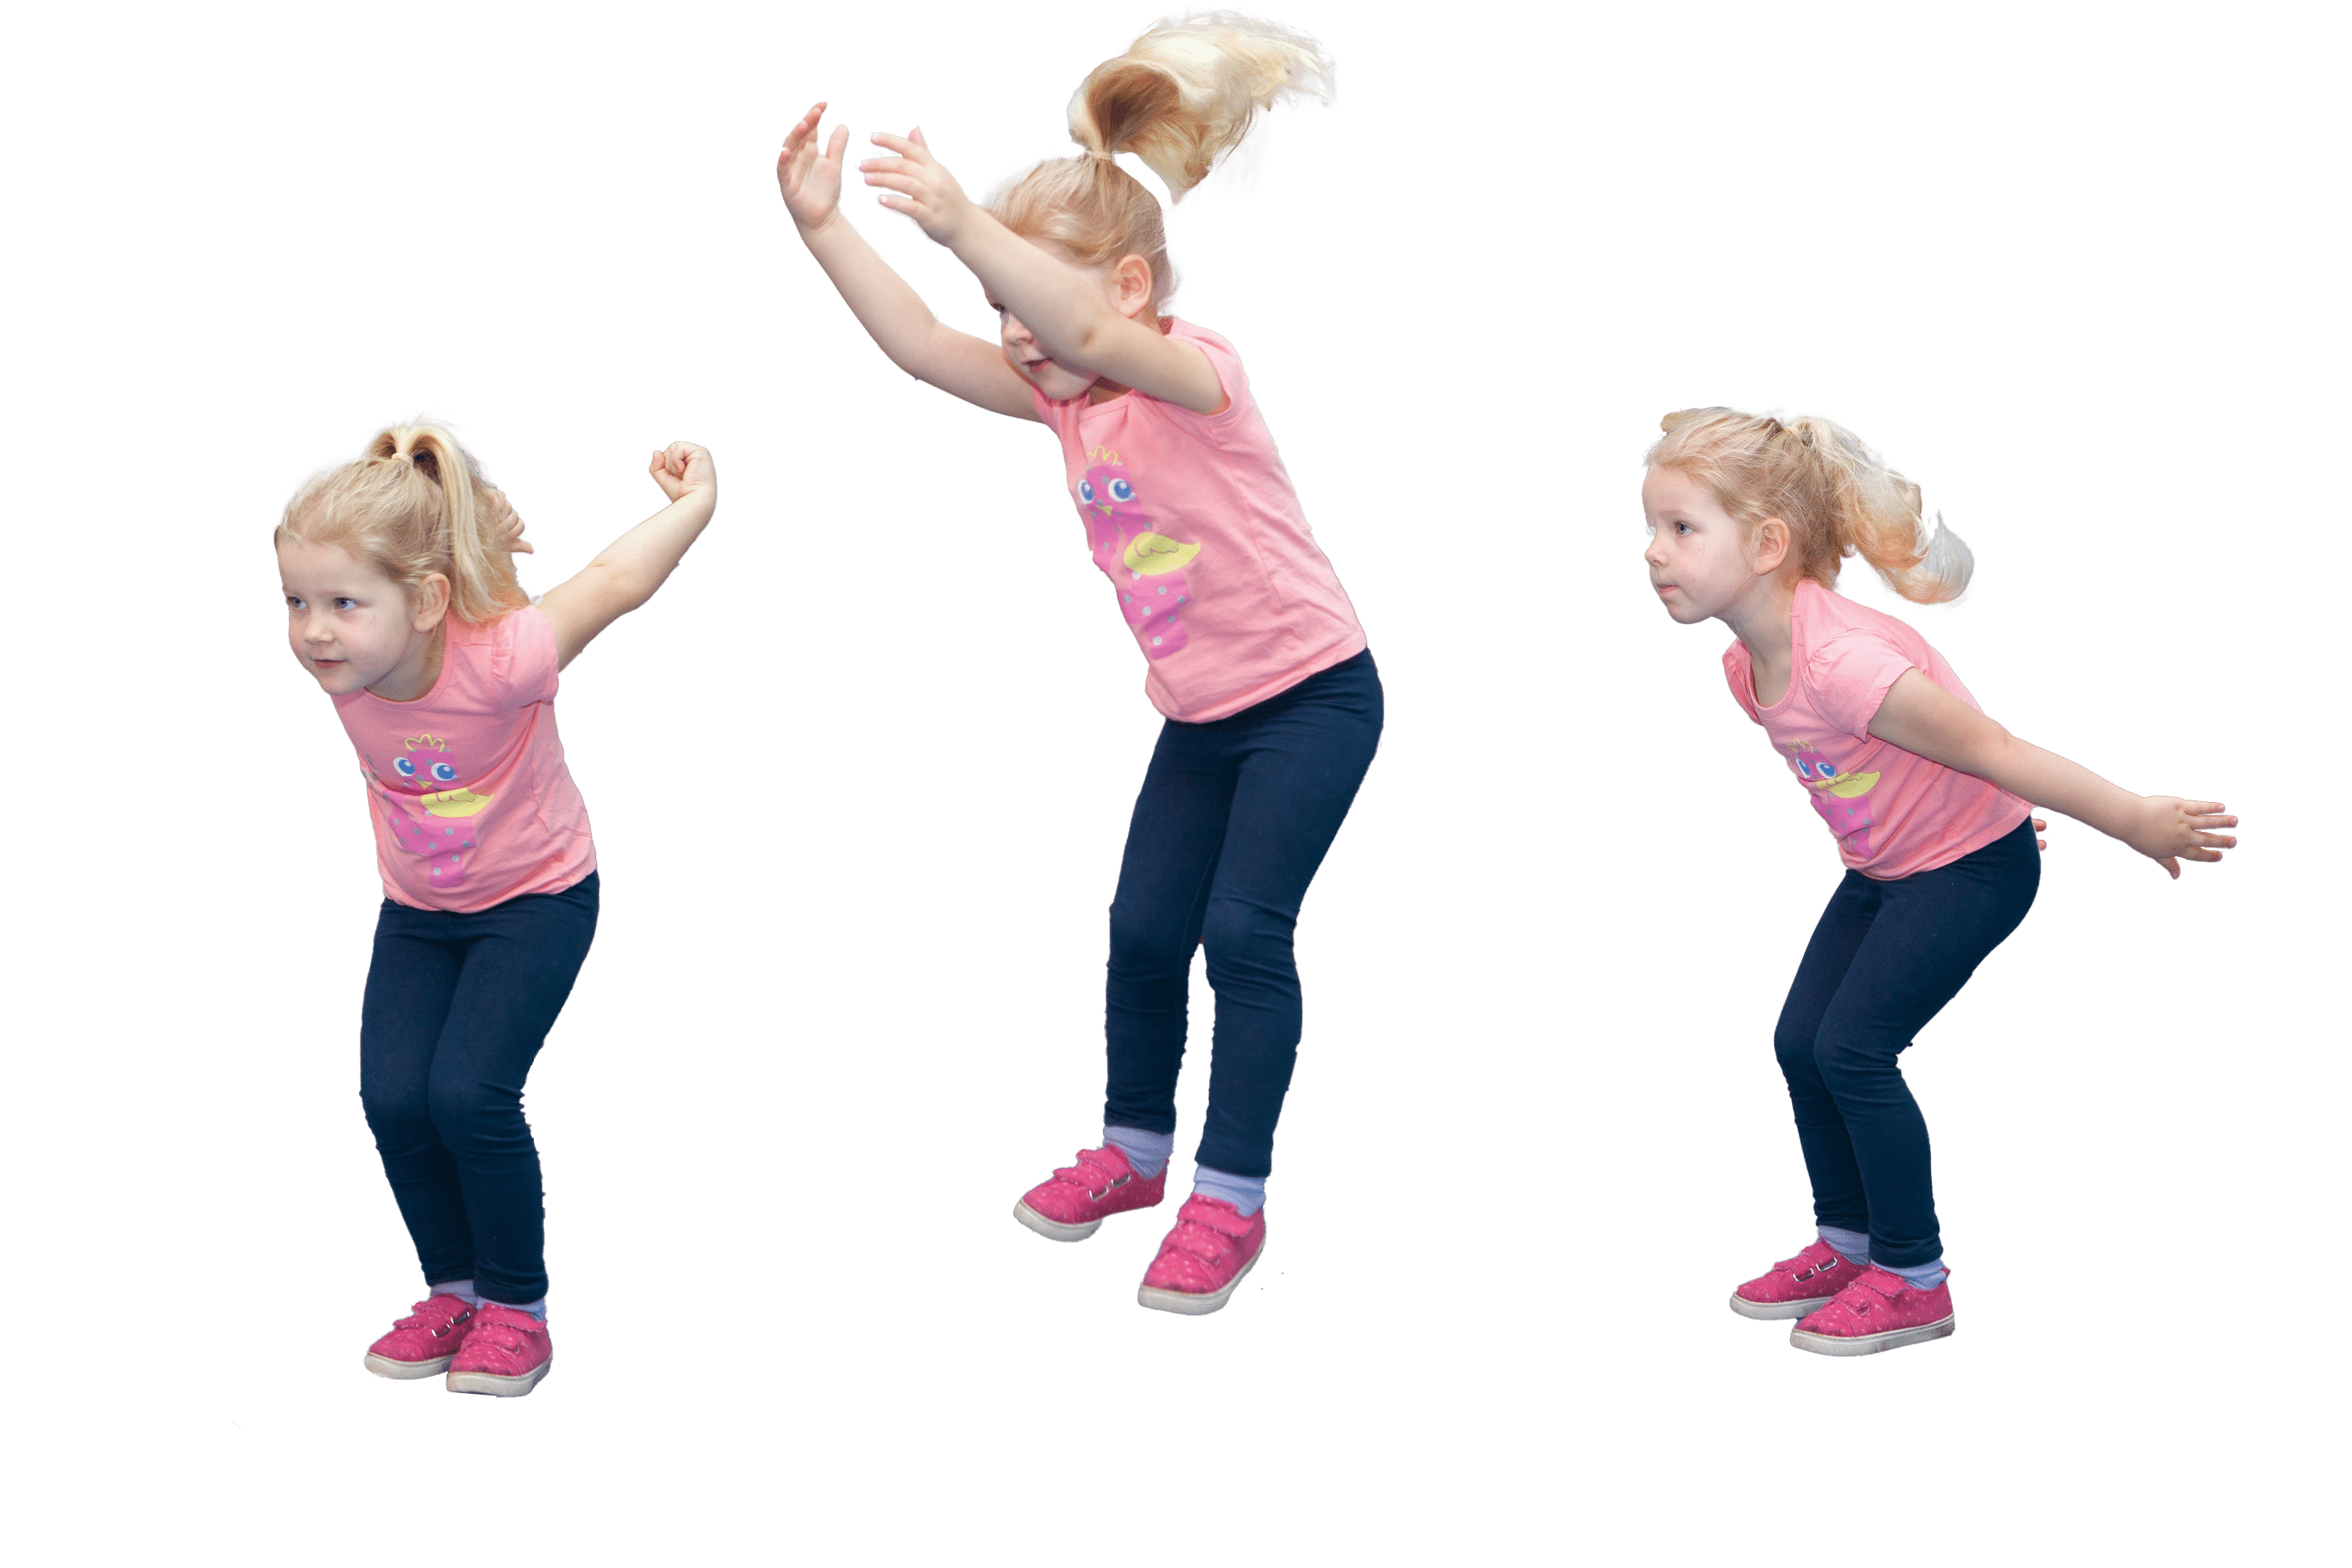 Child practising jumping technique.